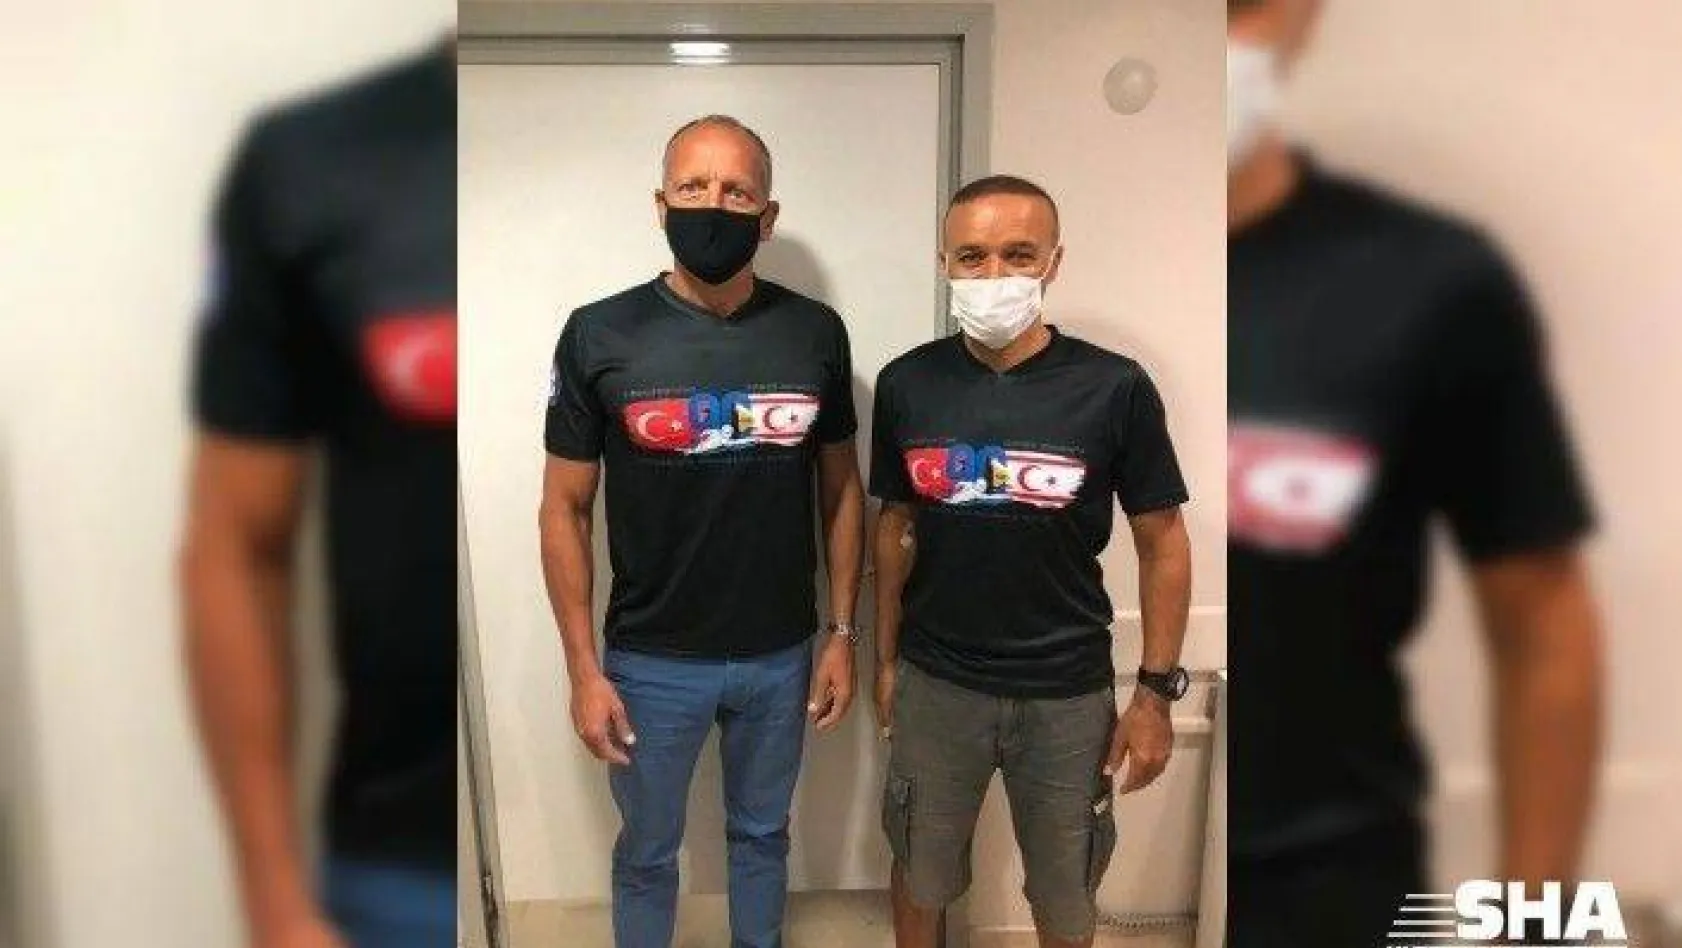 İstanbul Yıldızlar Yüzme Kulübü, Mersin'den Kıbrıs'a kulaç atacak